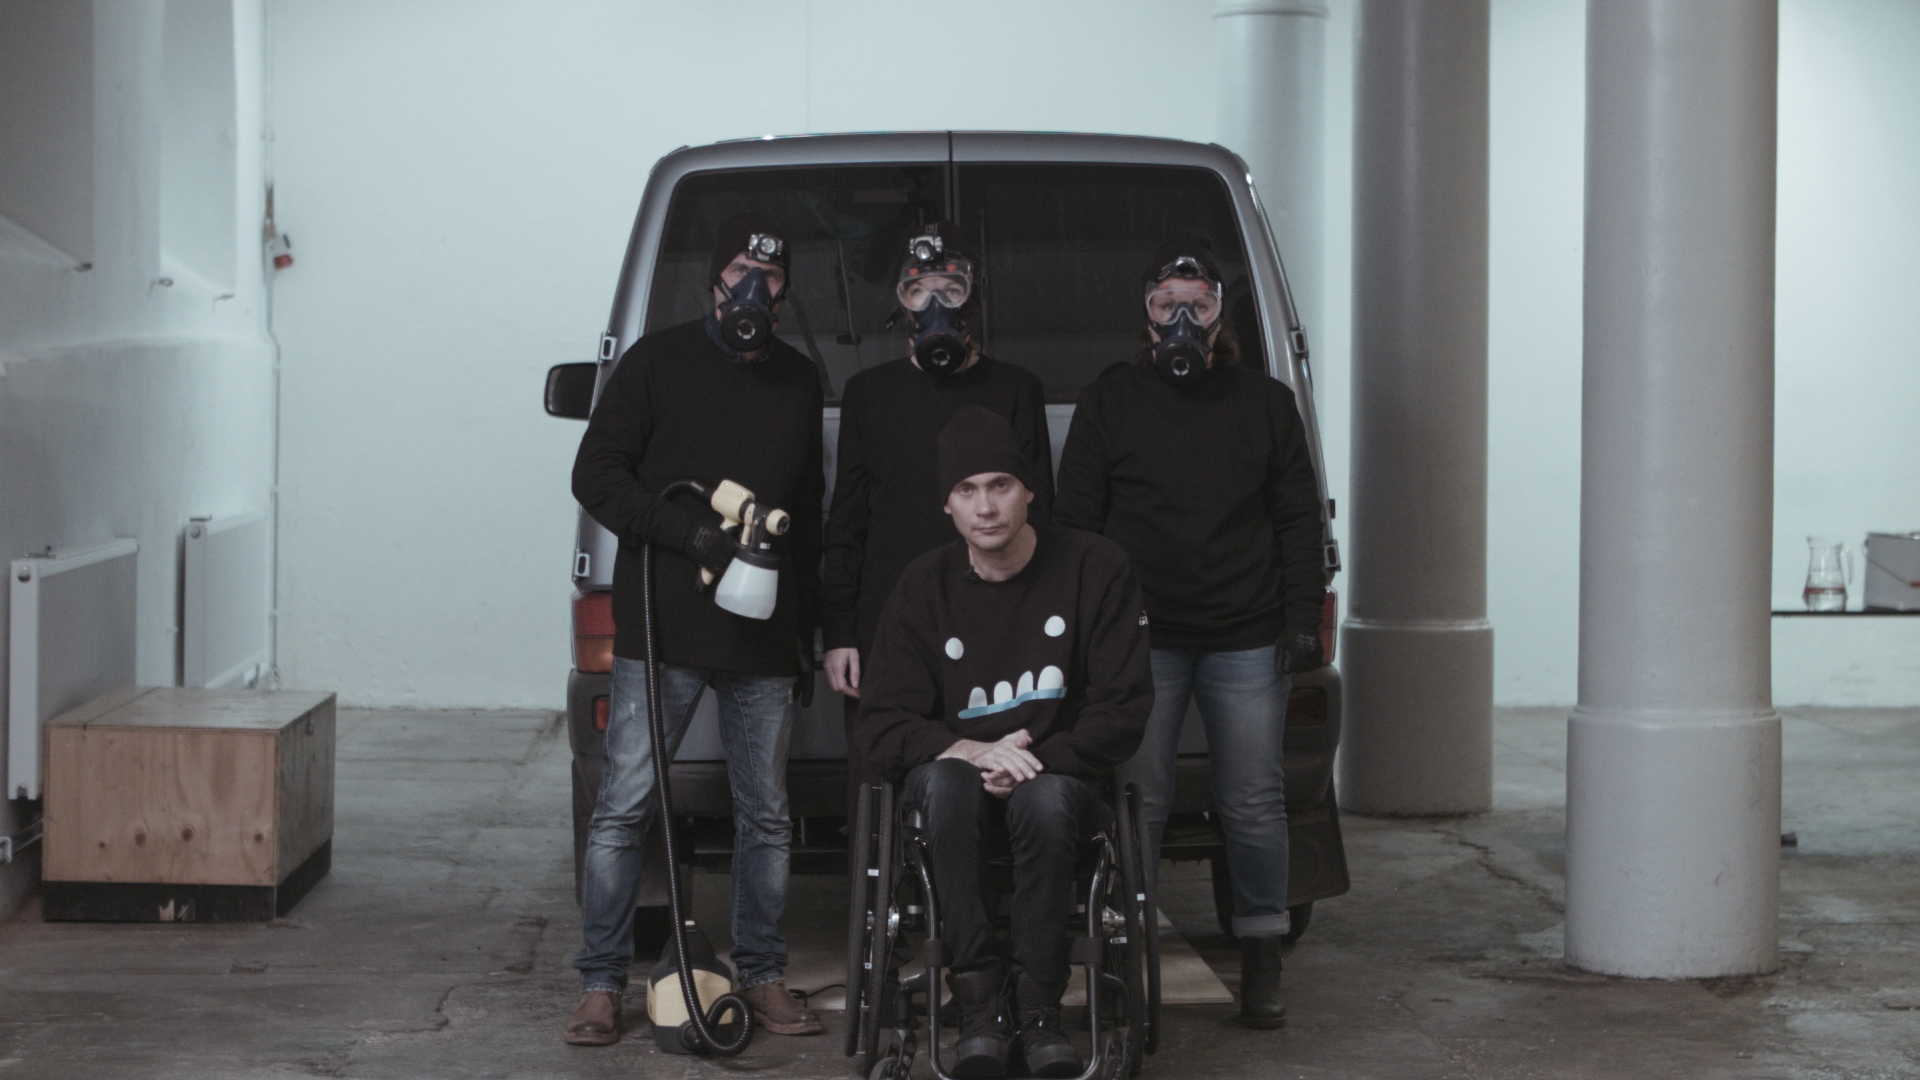 En skåpbil bakifrån, utanför står fyra svartklädda personer med gasmask och sprayfärg, en i rullstol